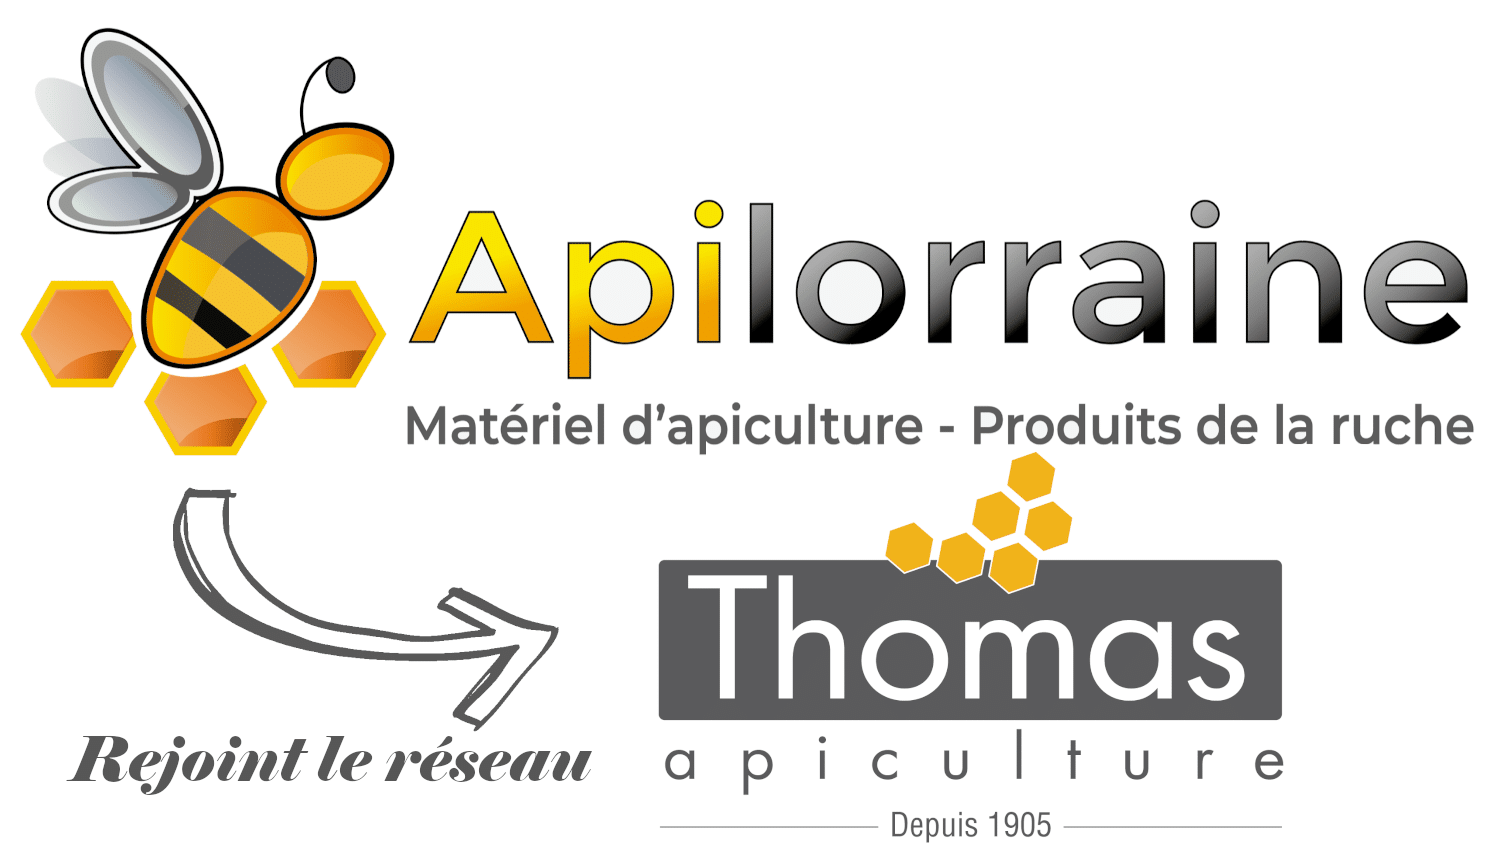 APILORRAINE-APICULTURE : Matériel d'apiculture en Lorraine !